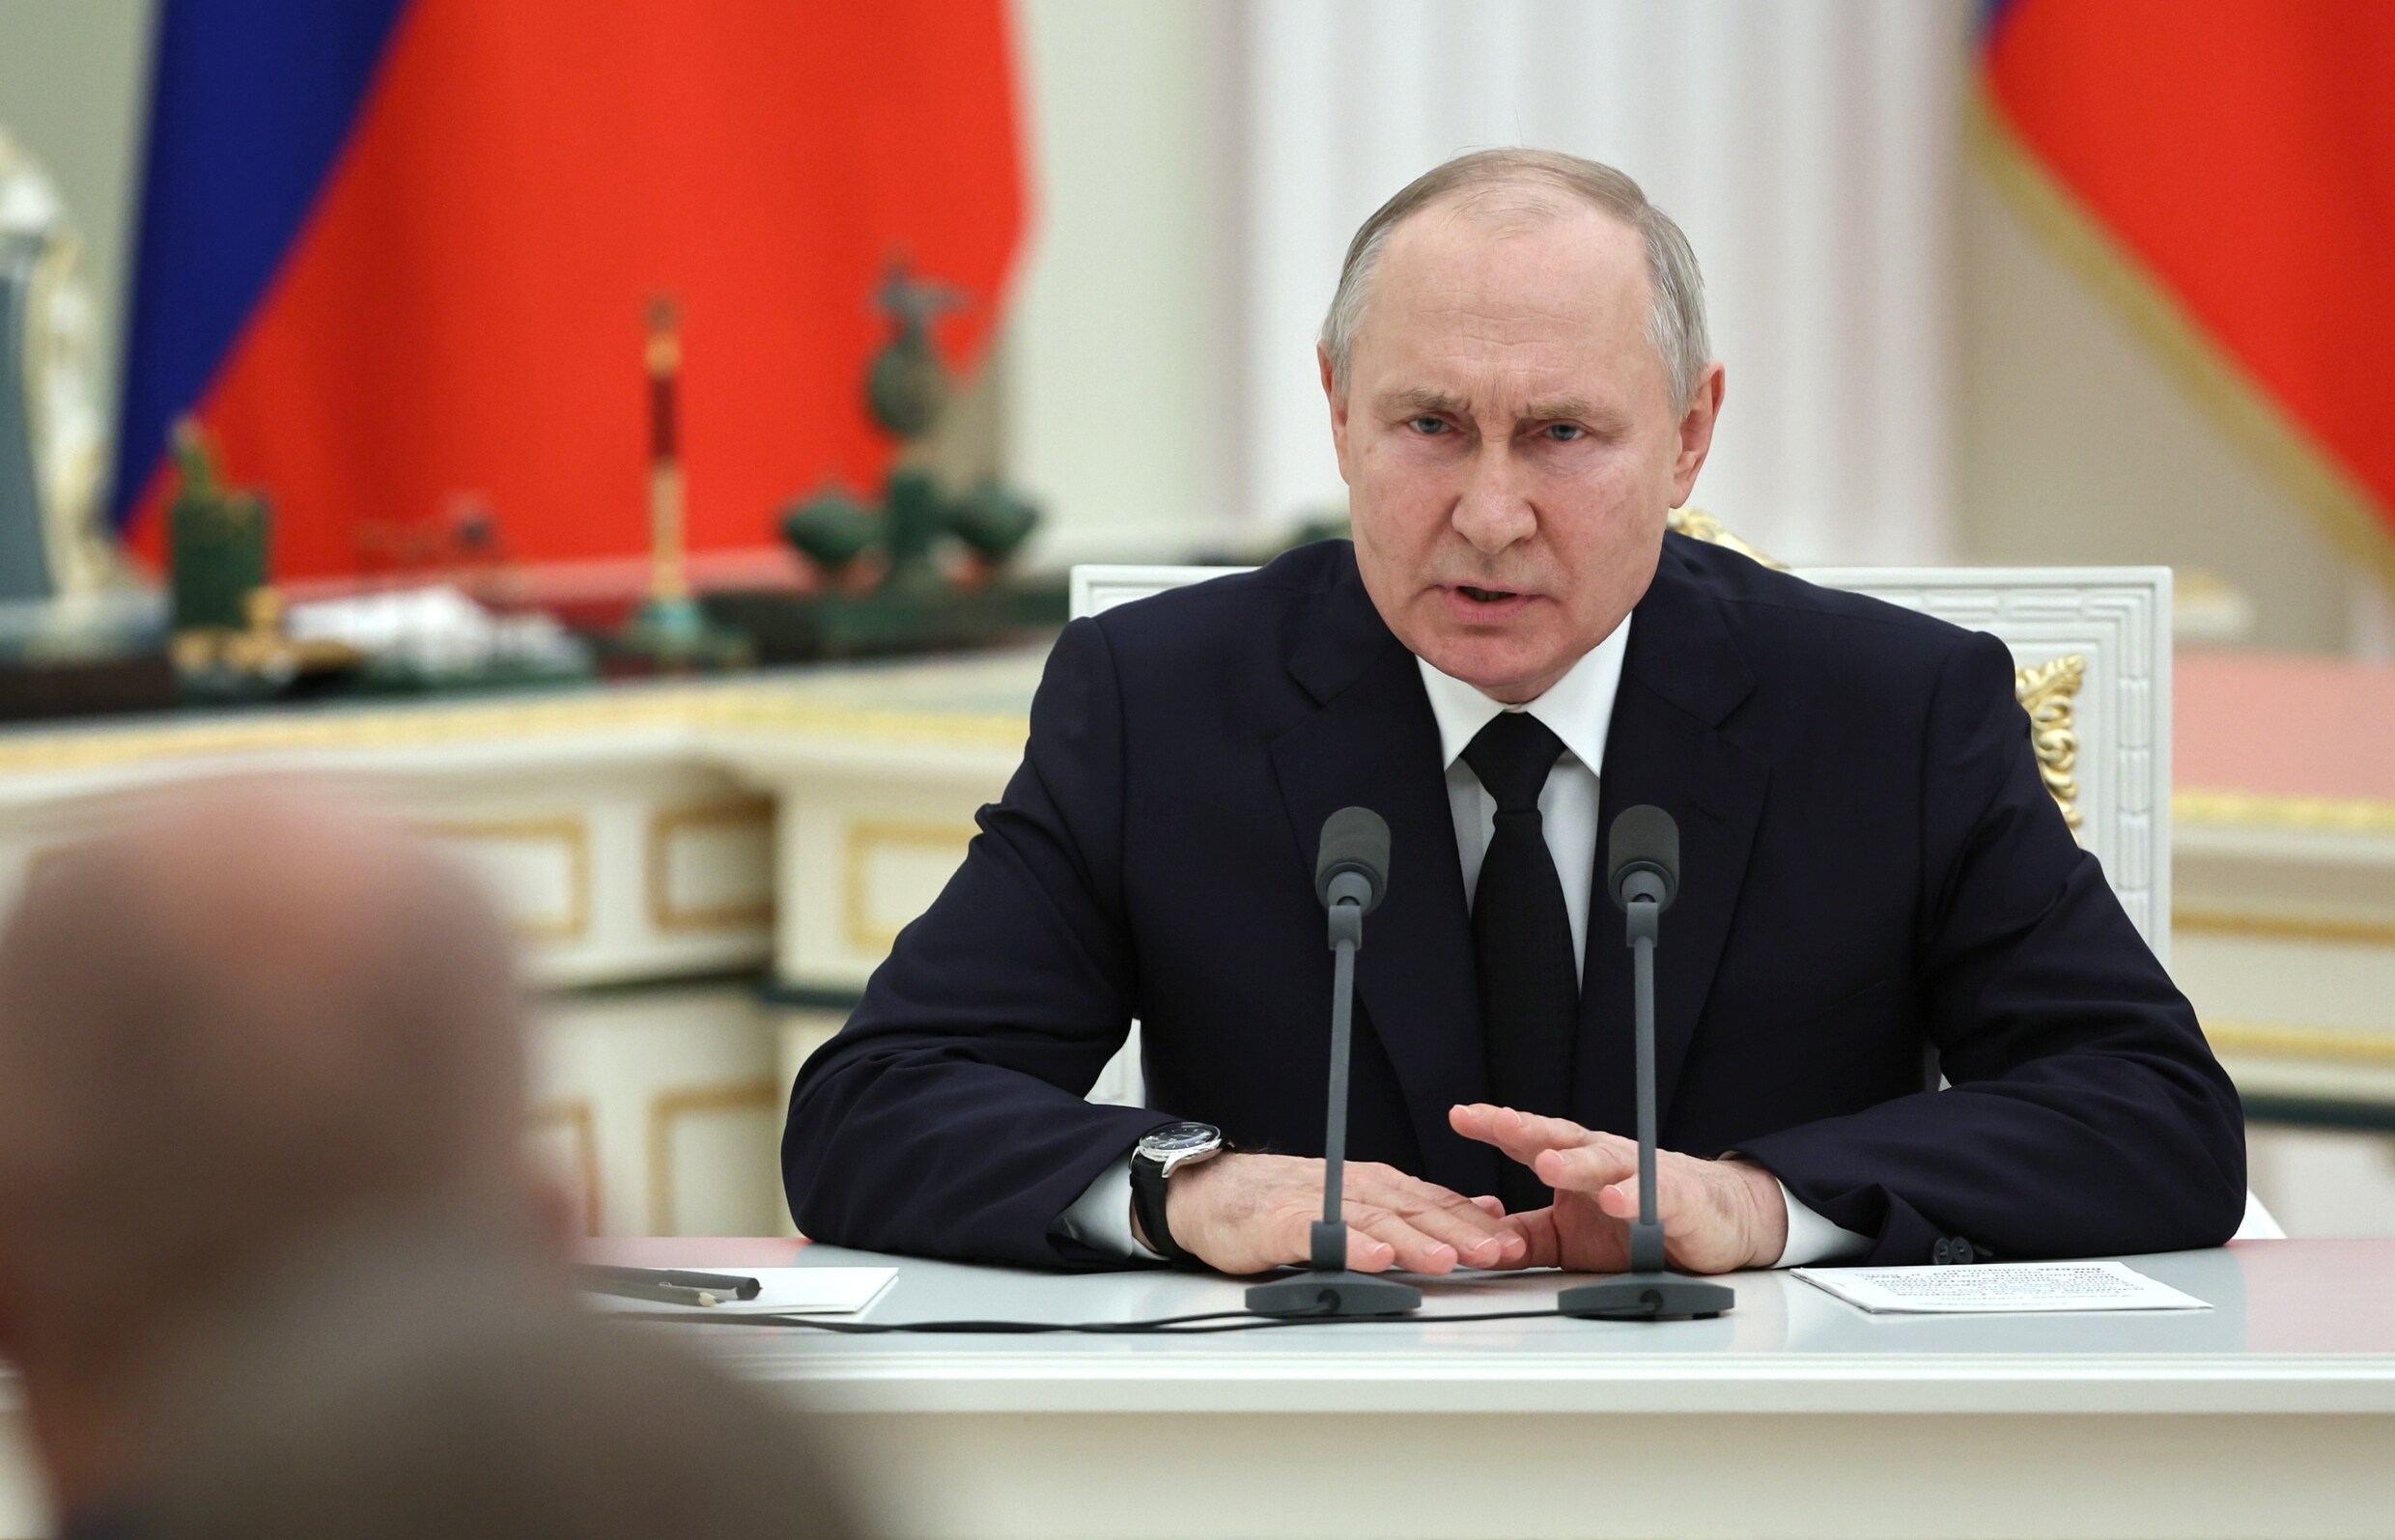 ▶ Meer bombardementen, meer repressie: ‘Dit is niet het einde van Vladimir Poetin’